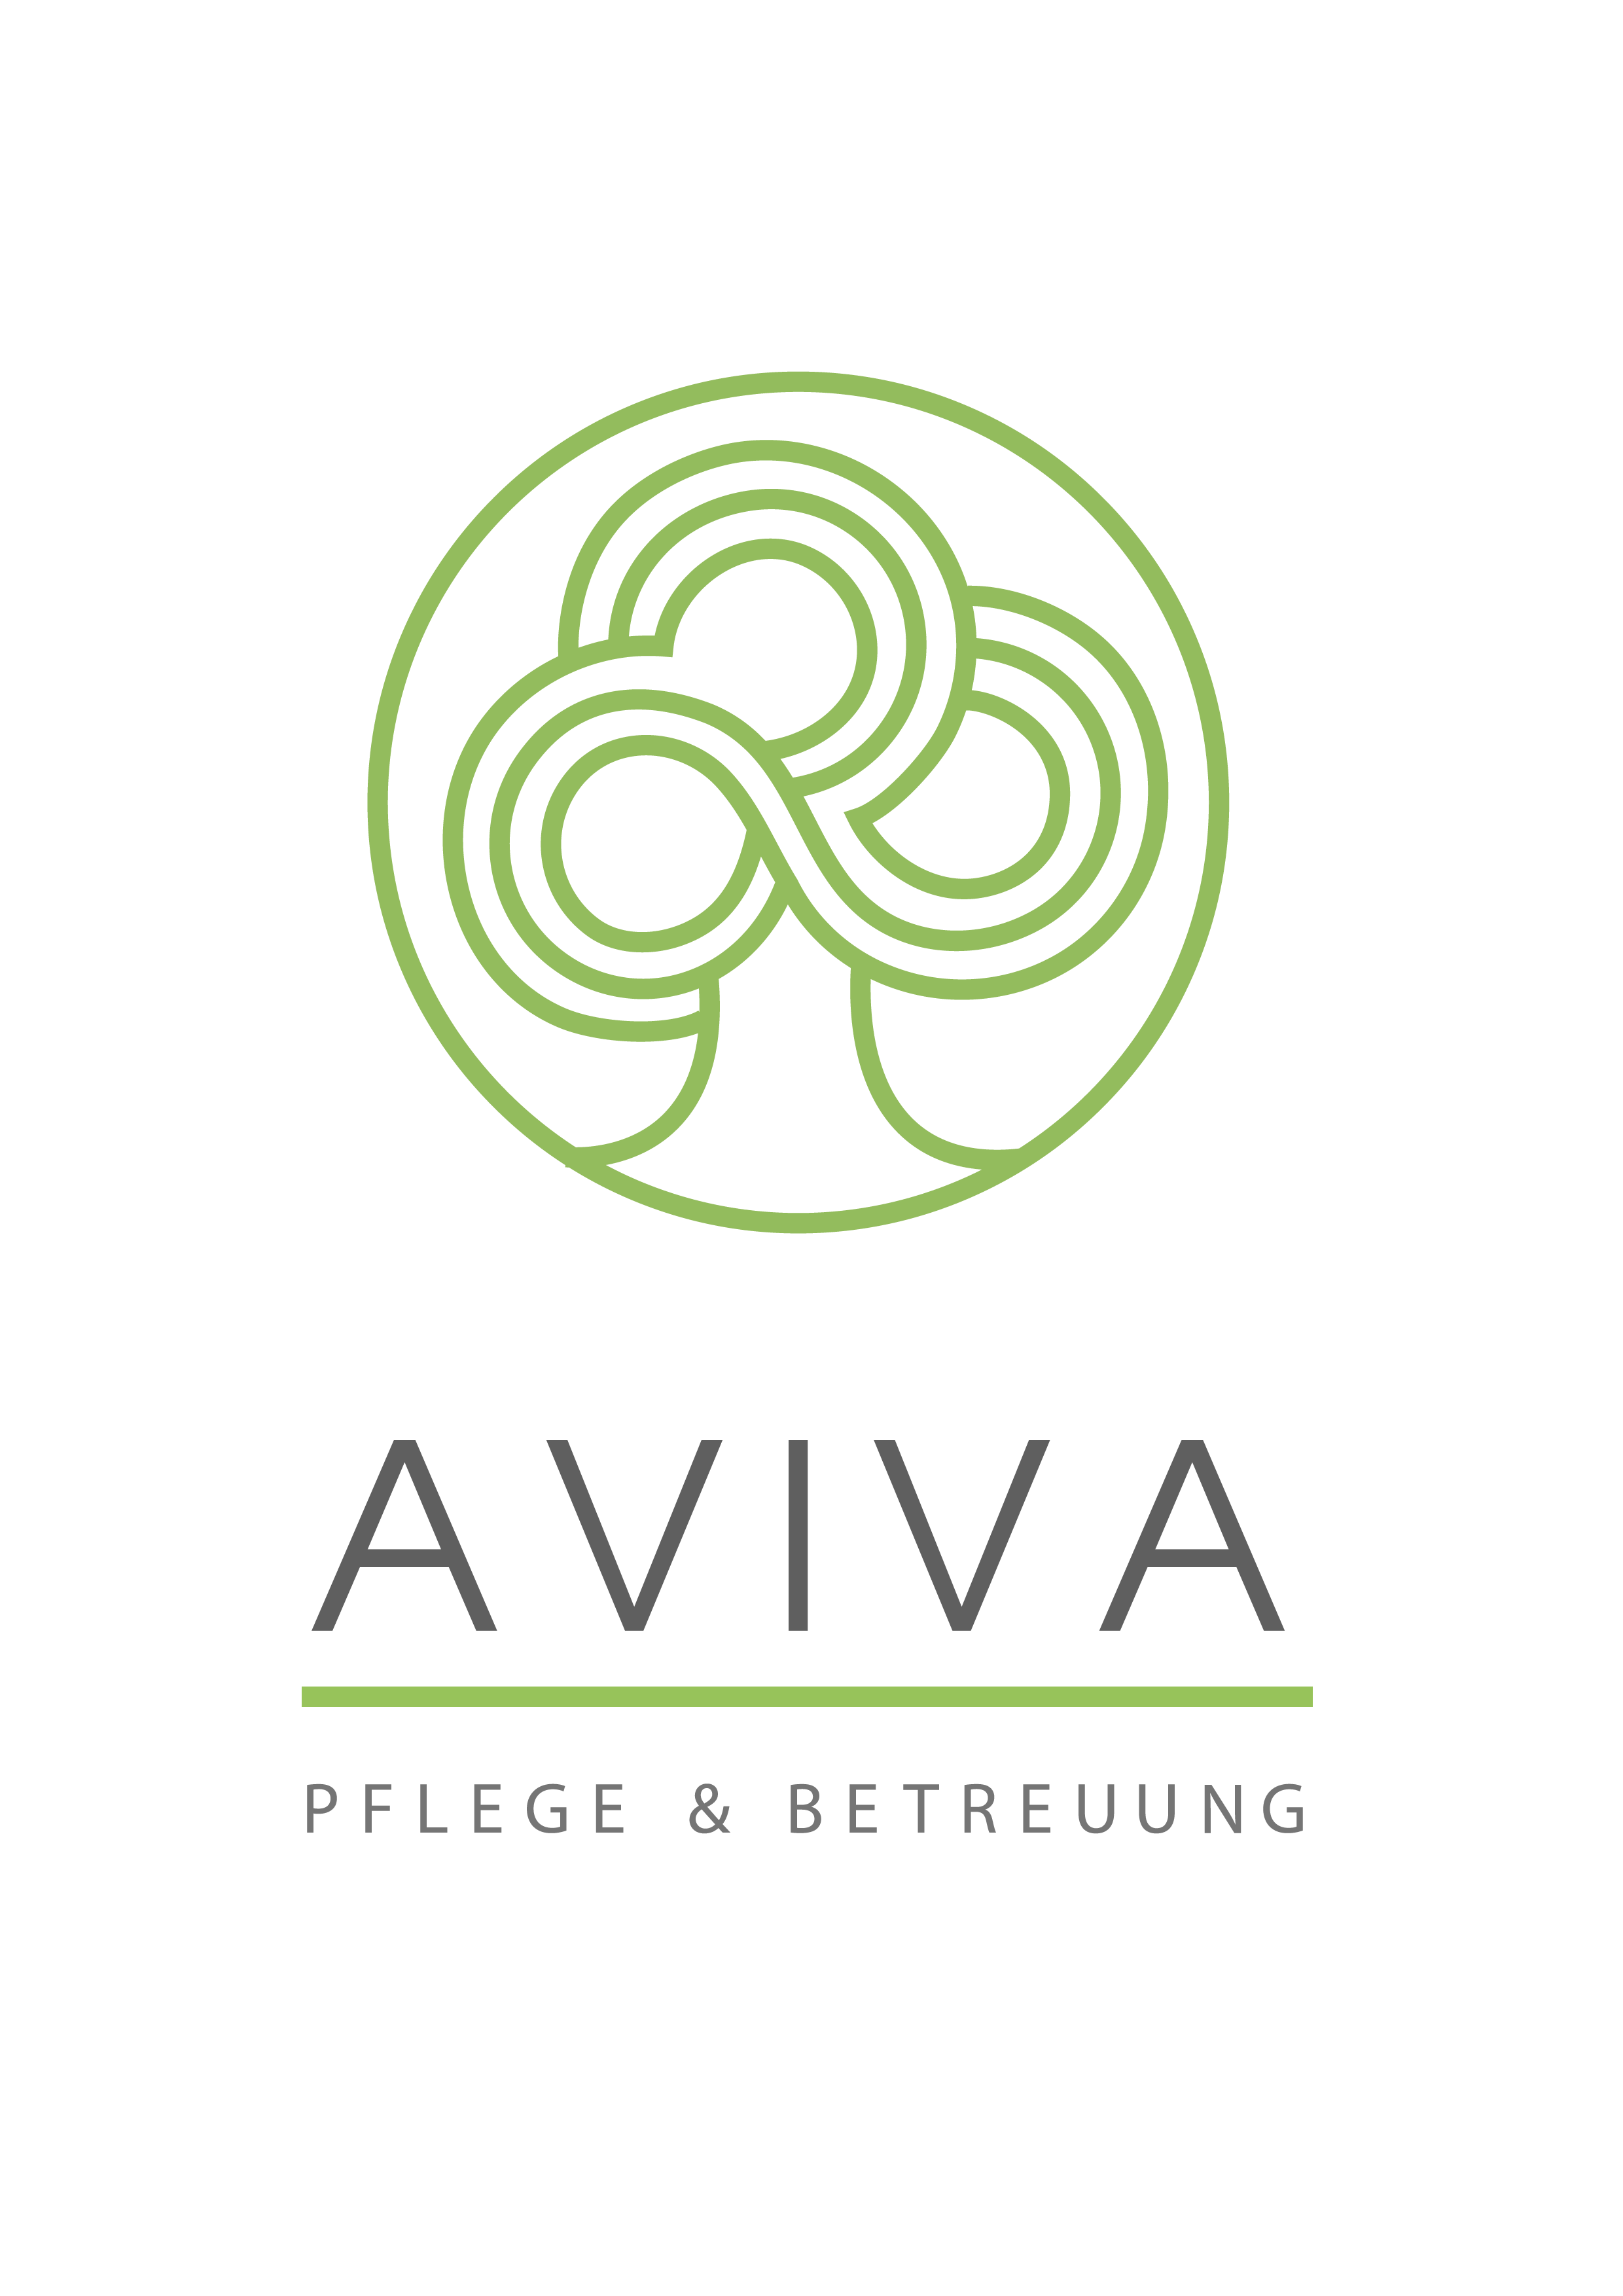 AVIVA Pflegedienst GmbH Logo